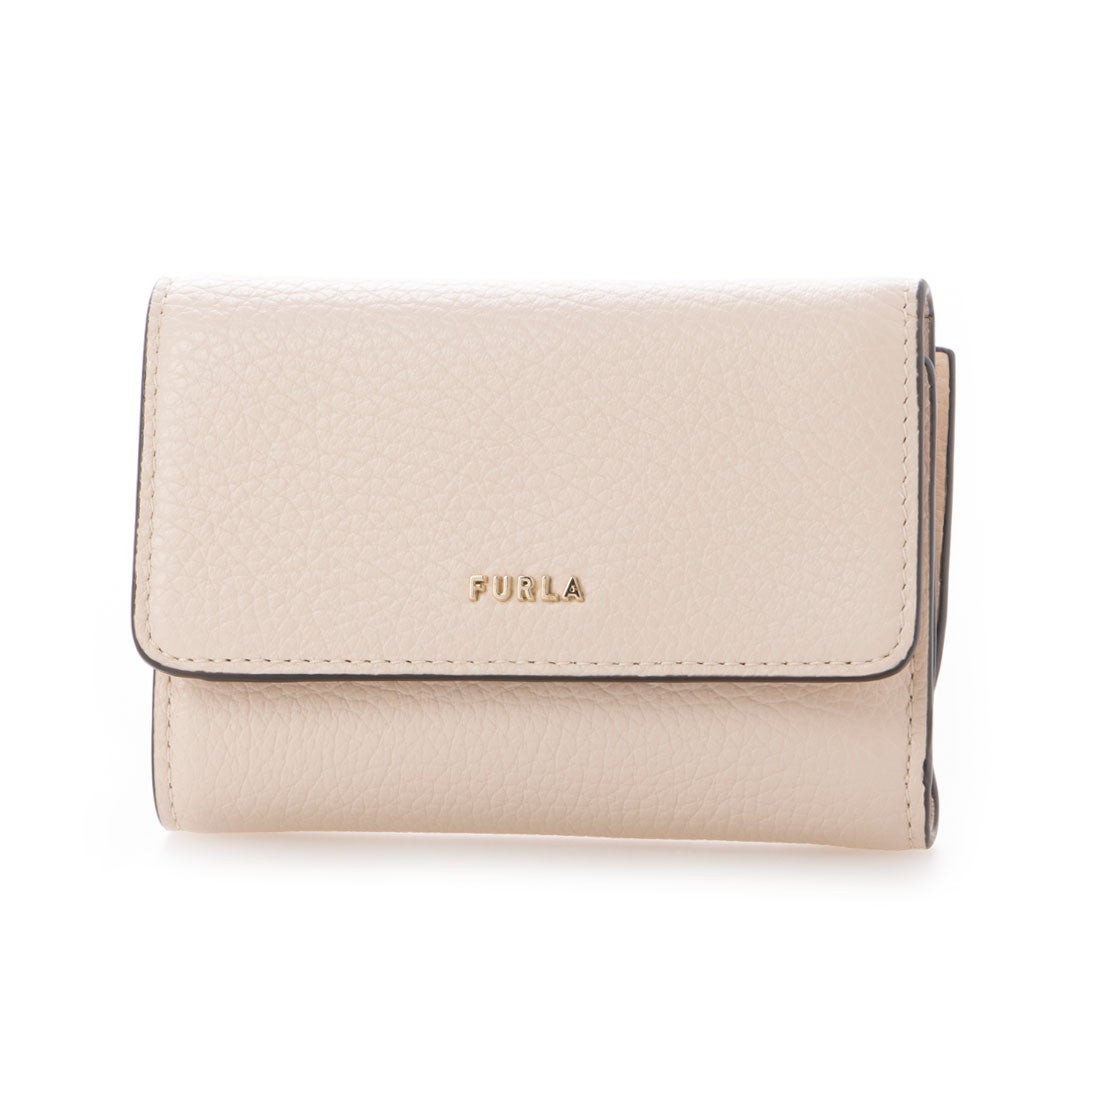 FURLA フルラ FULRA 三つ折り財布 （ベージュ） -ファッション通販